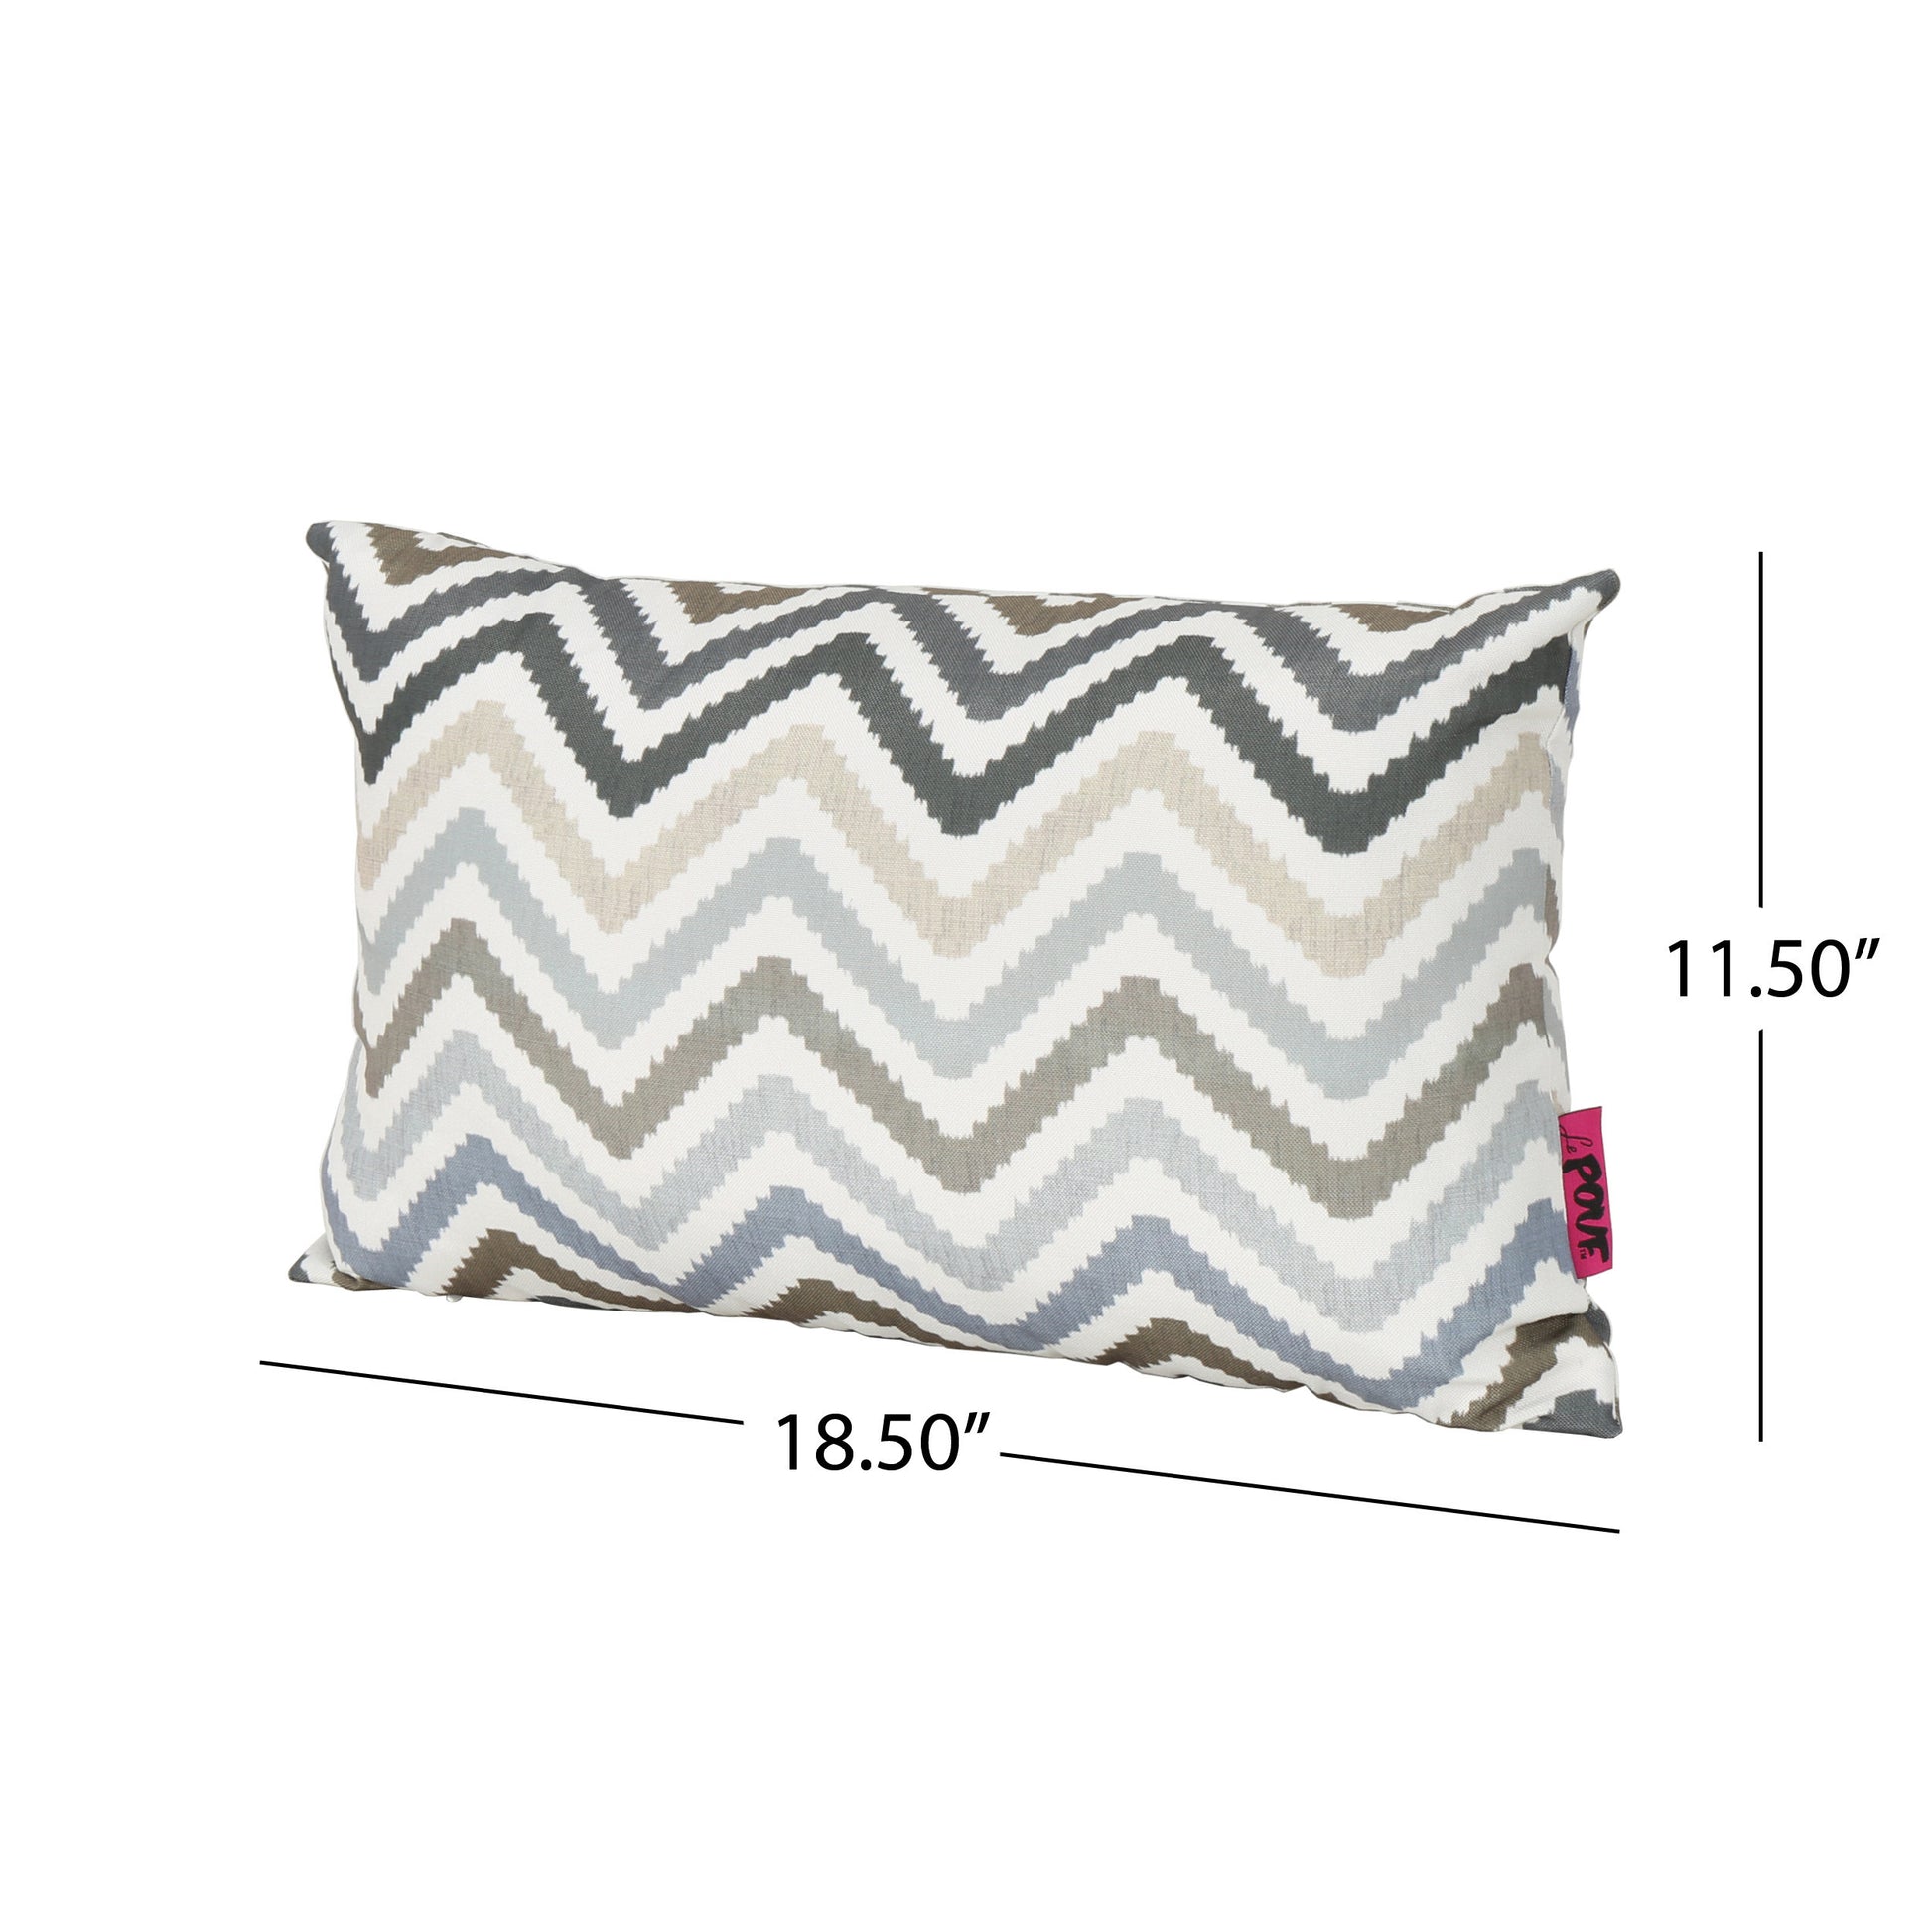 Kimpton Rectangular Pillow - Grey Fabric